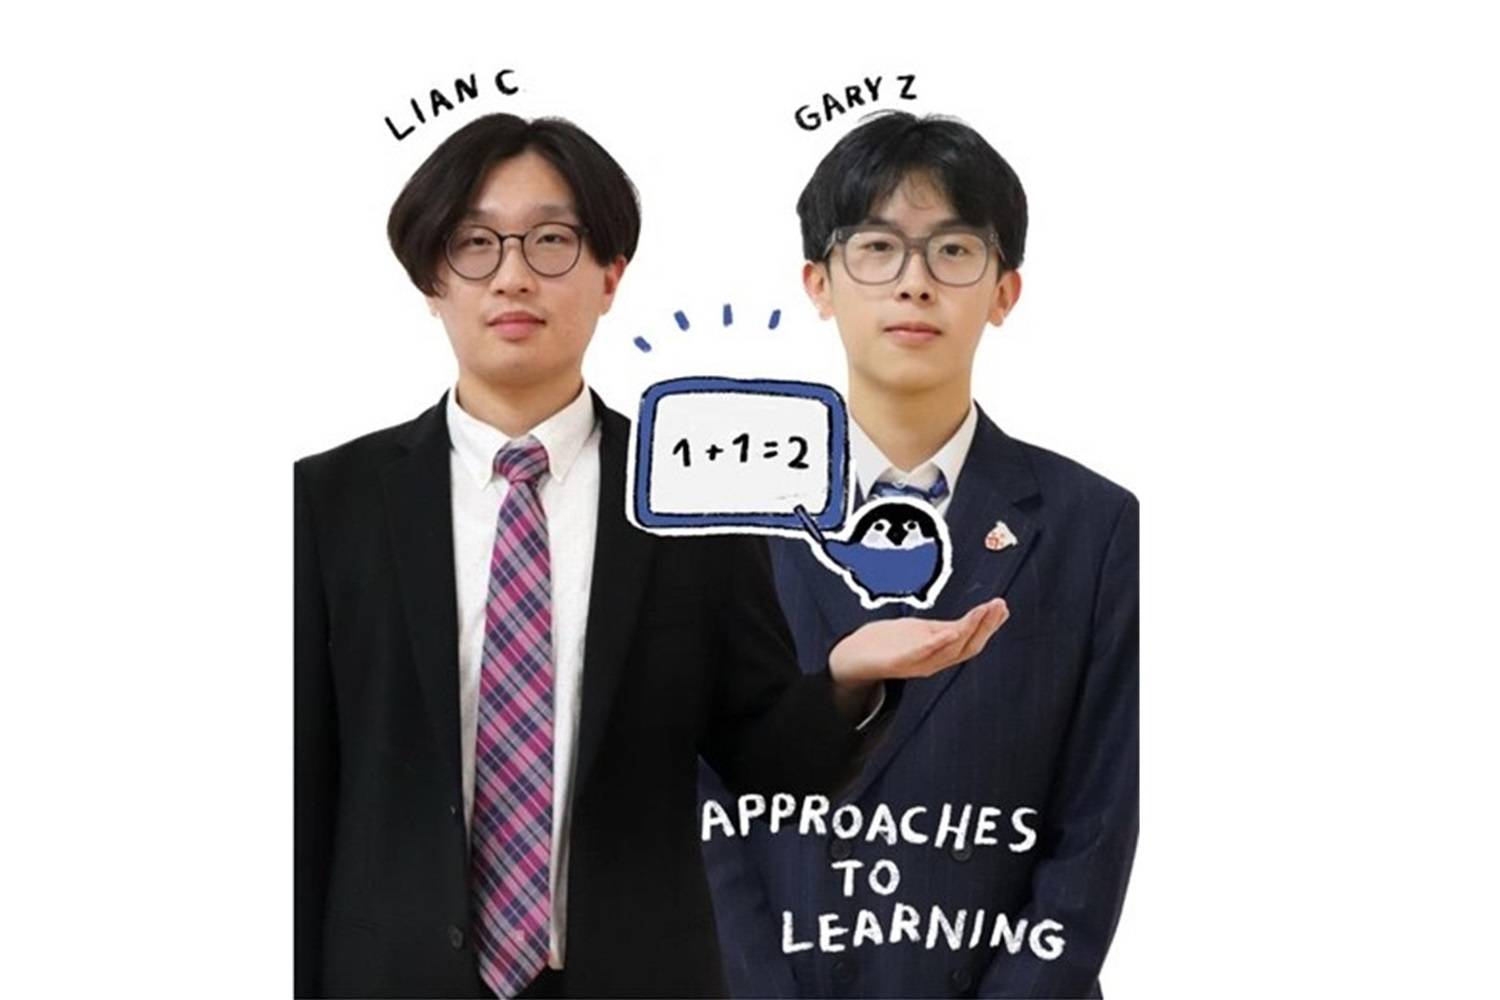 学习方法学生代表：Lian C 和 Gary Z